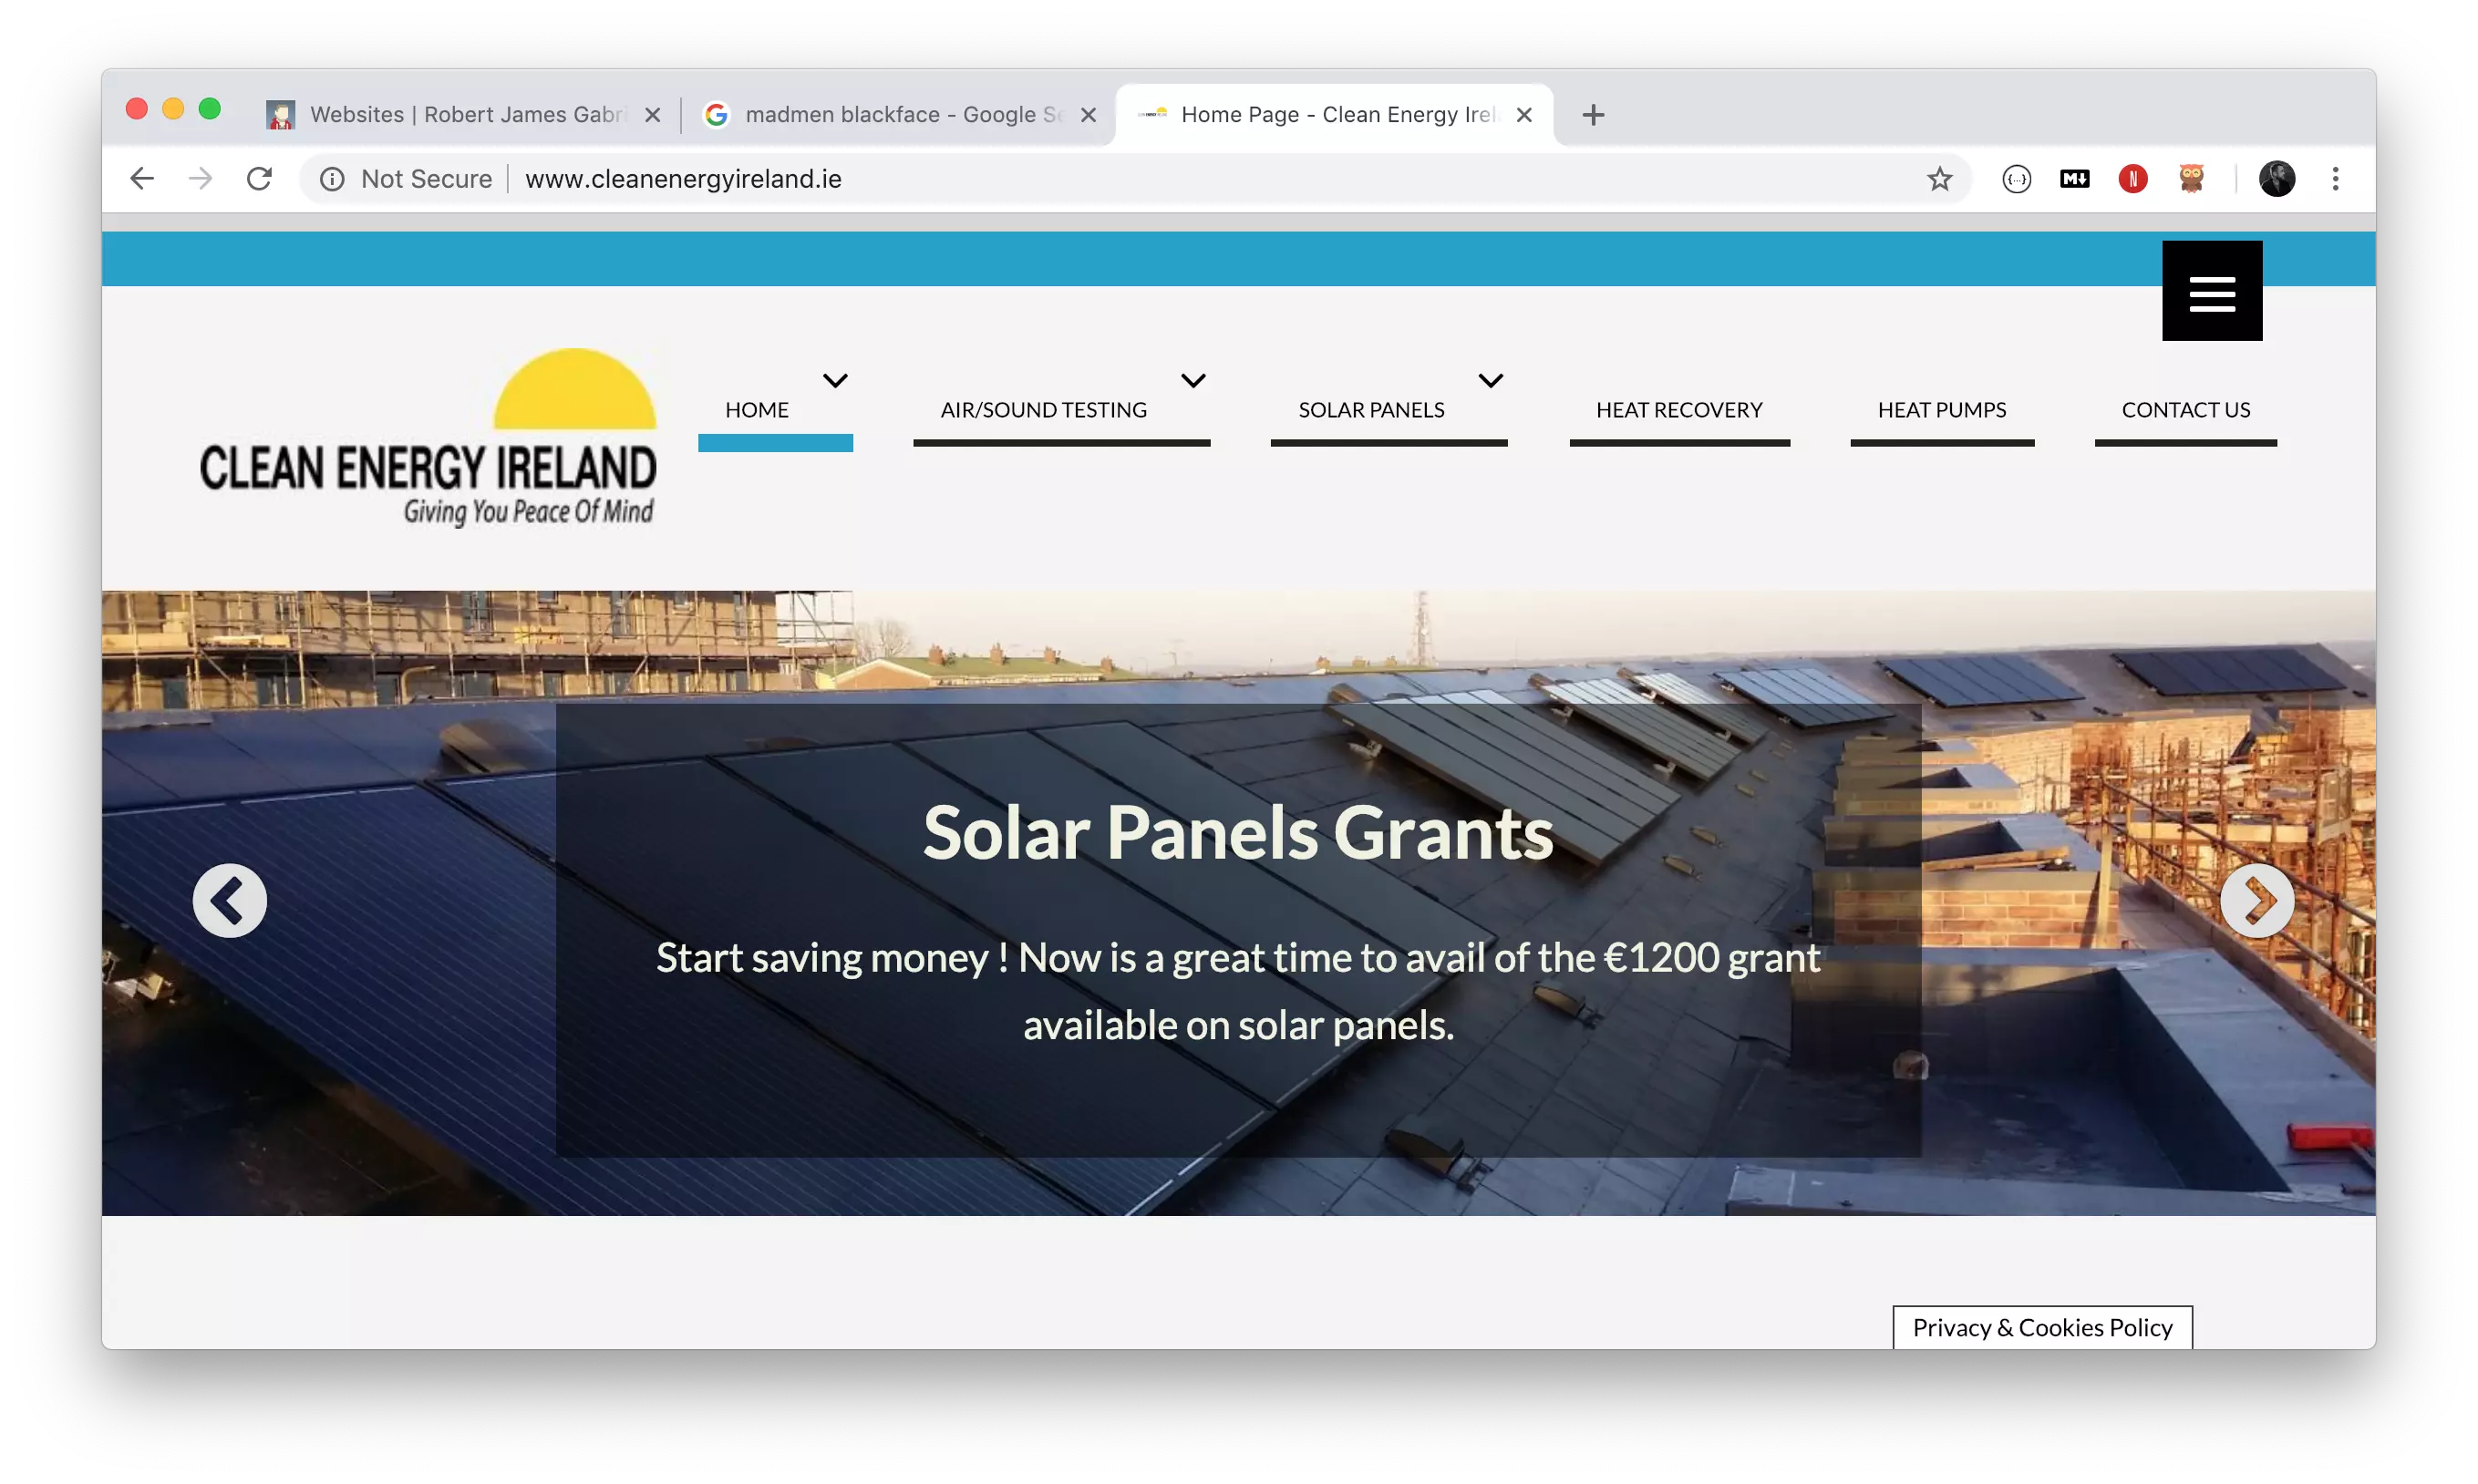 Clean energy Ireland